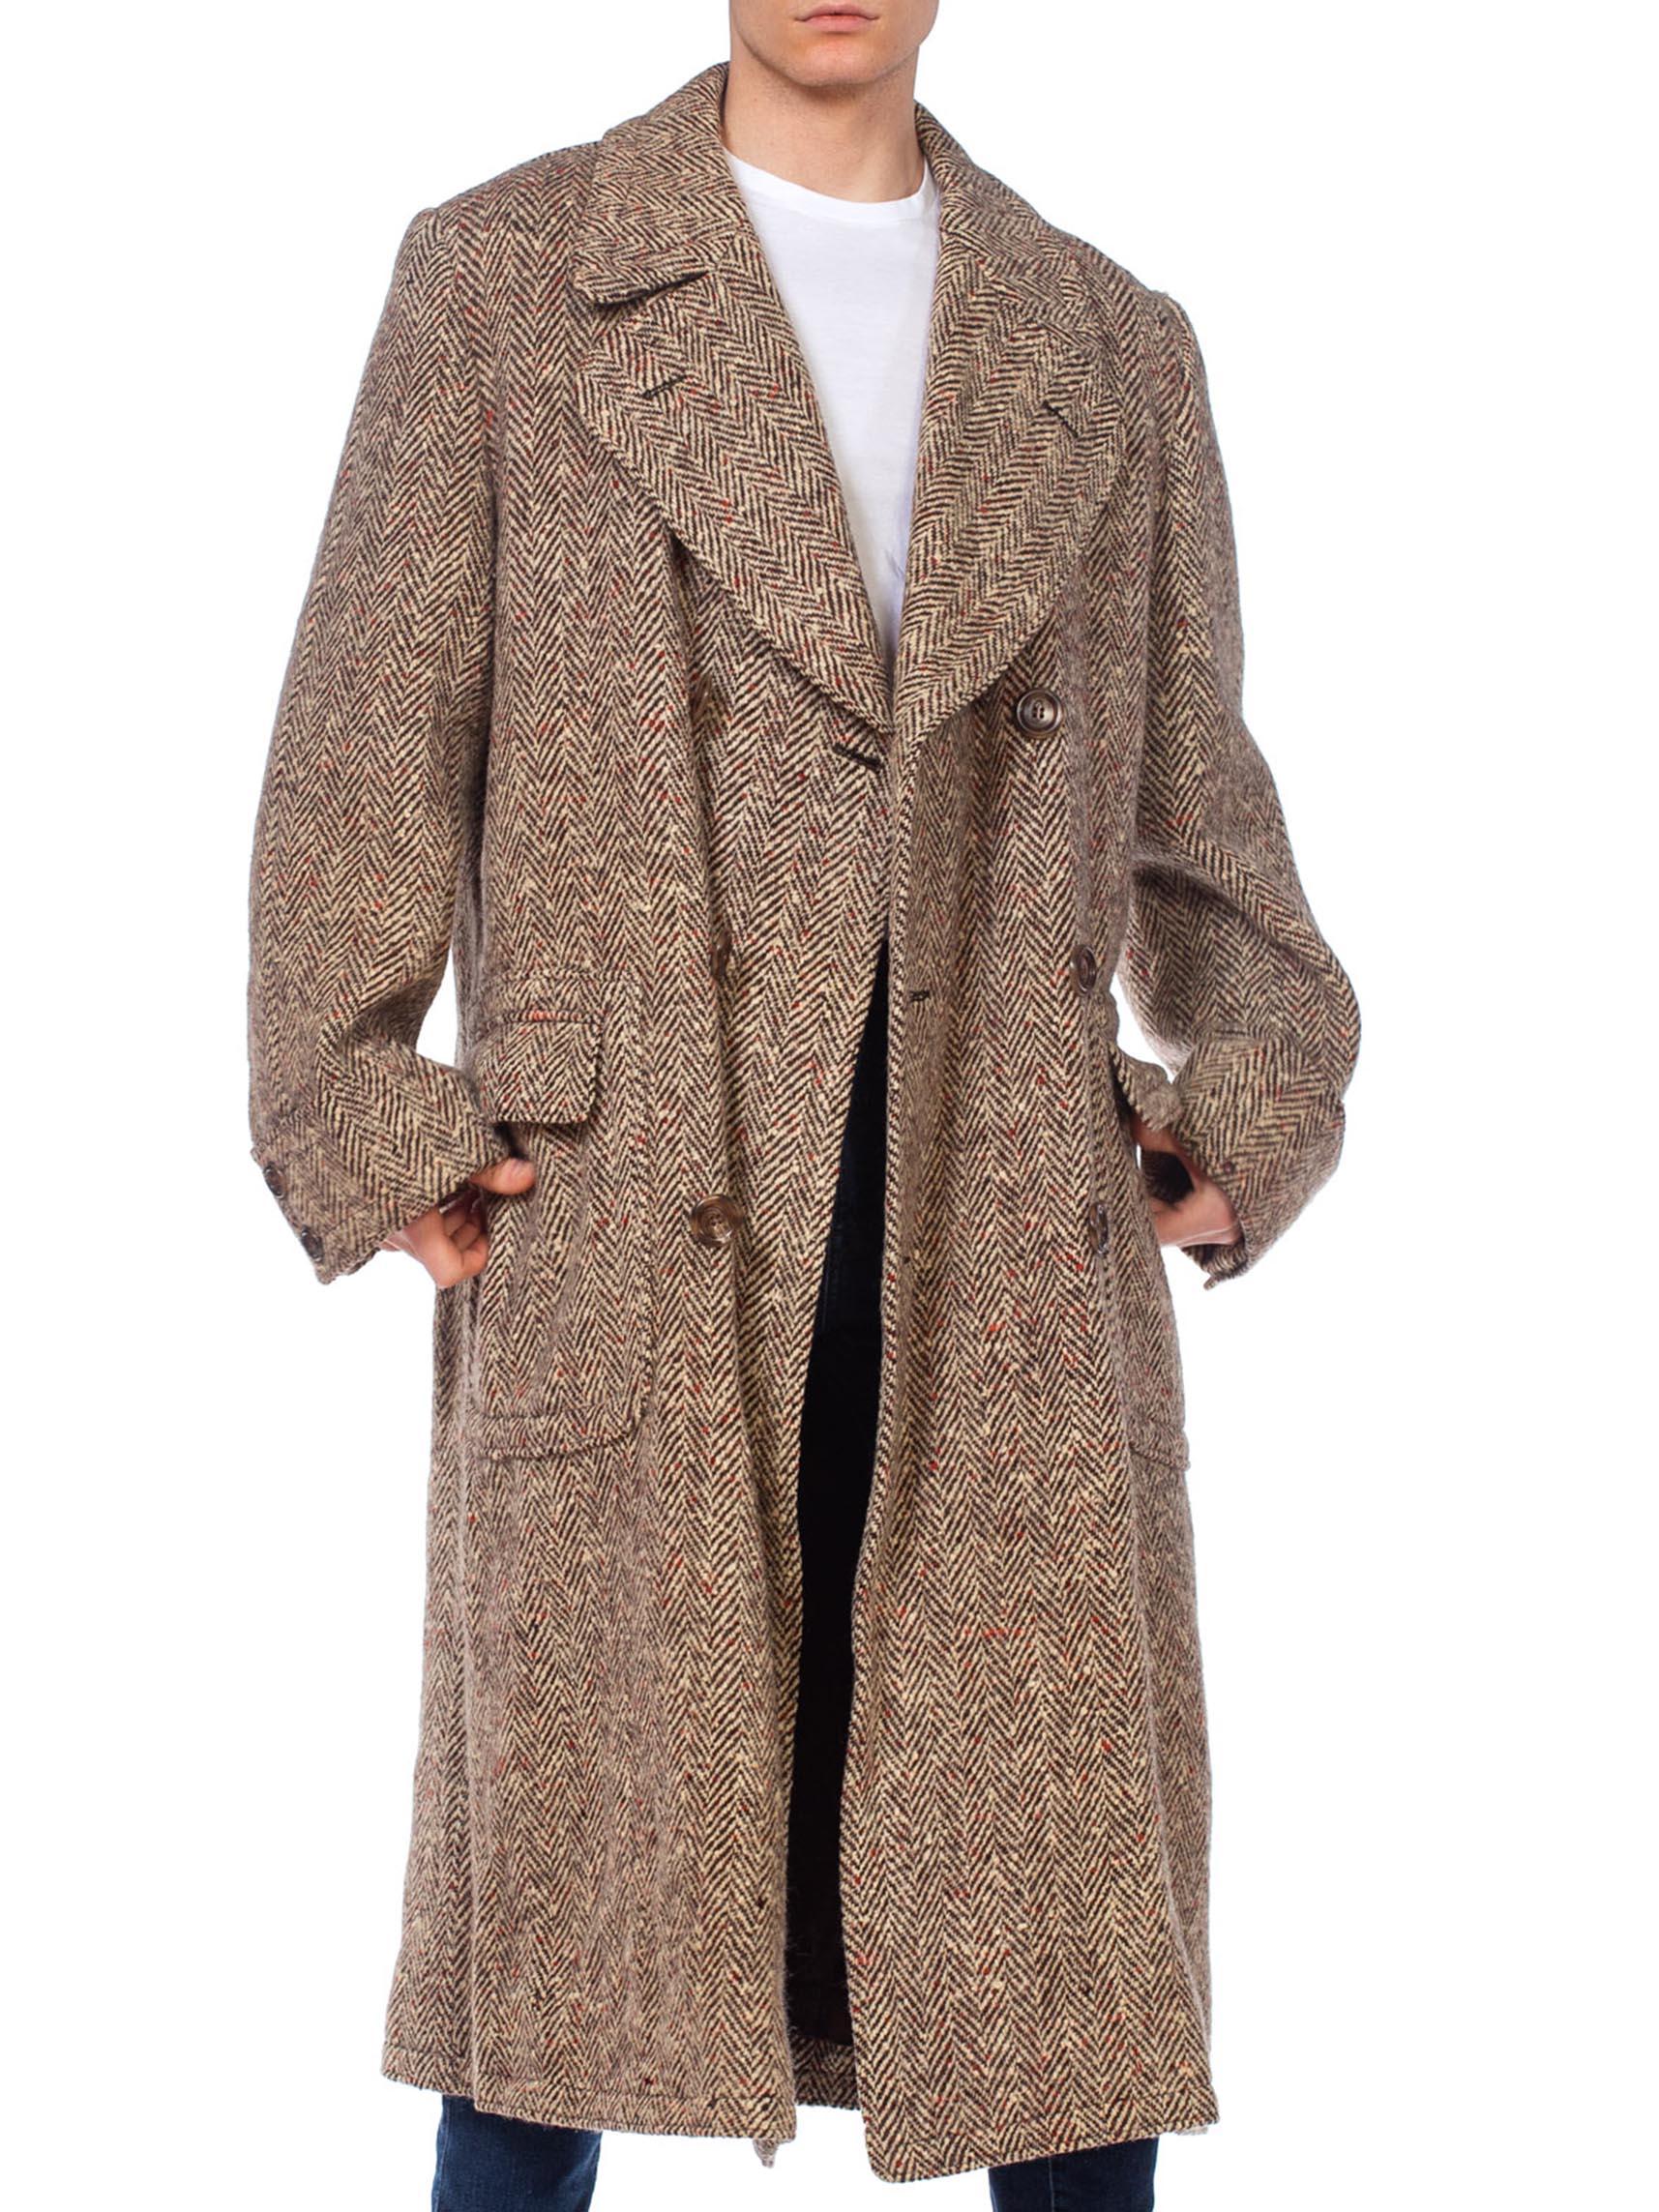 1920s overcoat